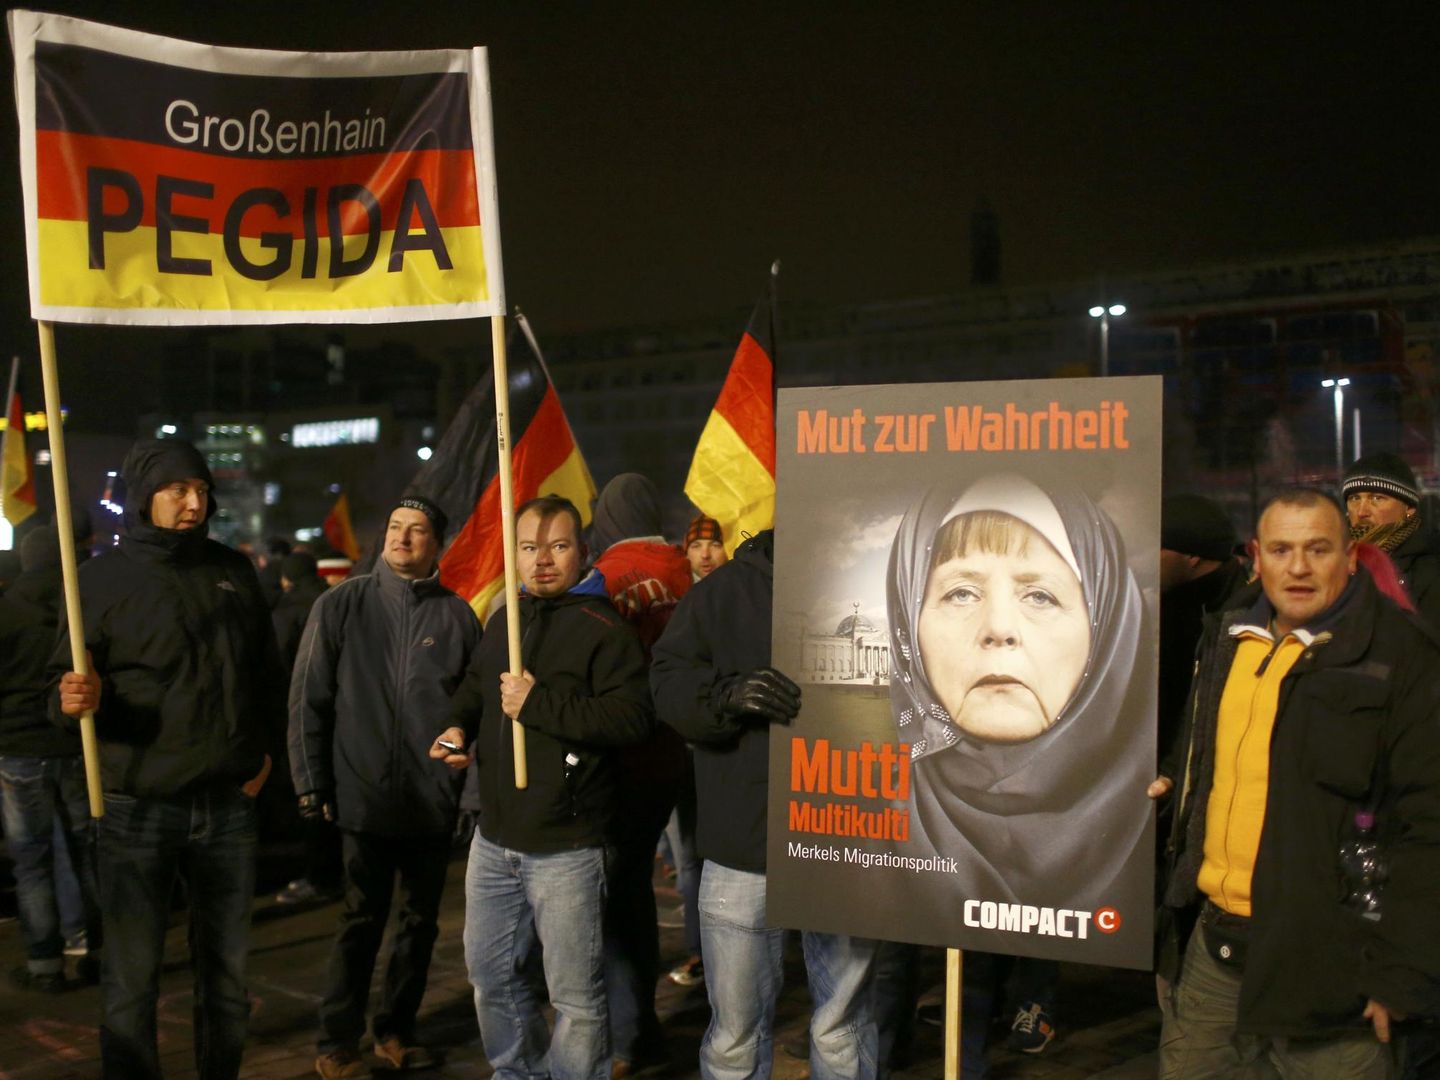 Miembros de Pegida se manifiestan contra Angela Merkel en Leipzig (Reuters).